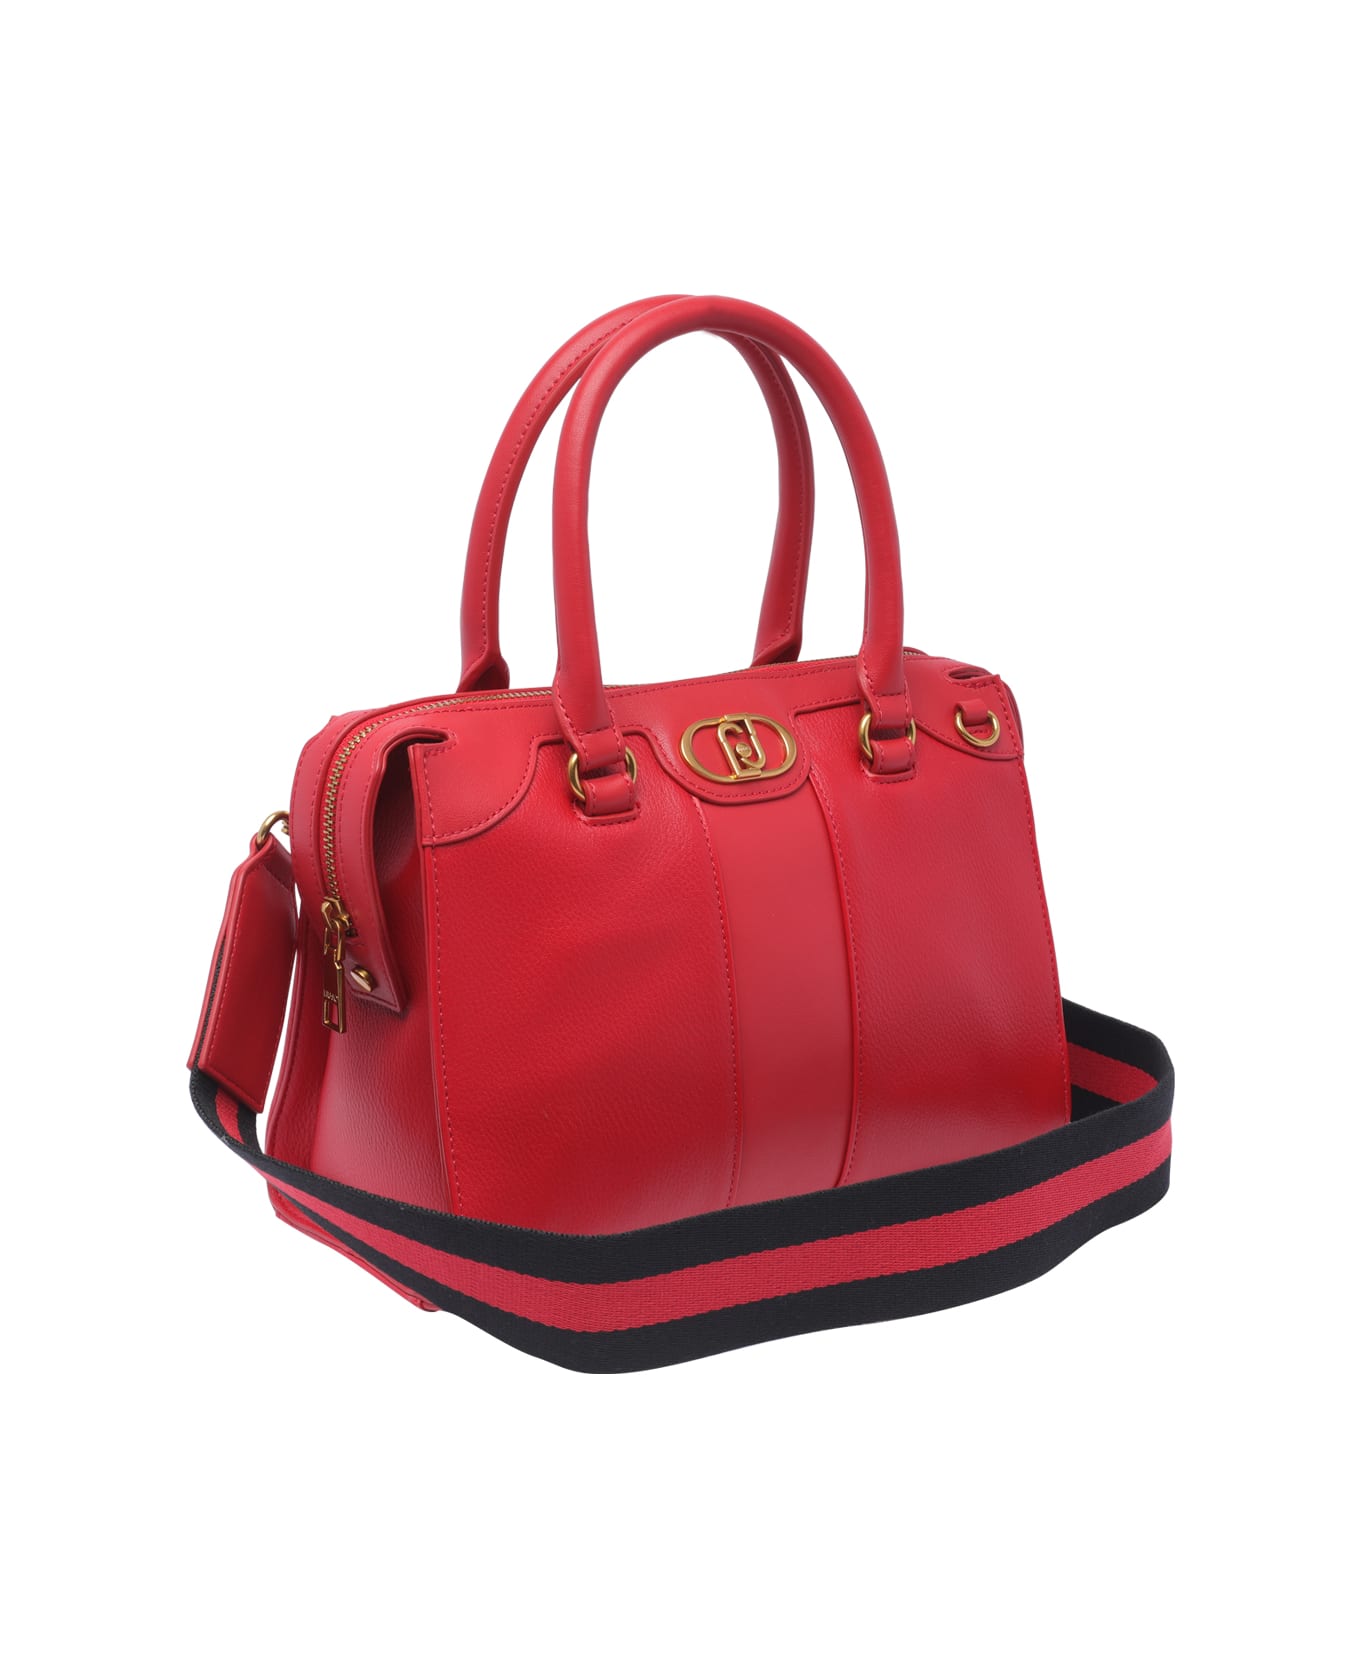 Liu-Jo Logo Handbag - Red